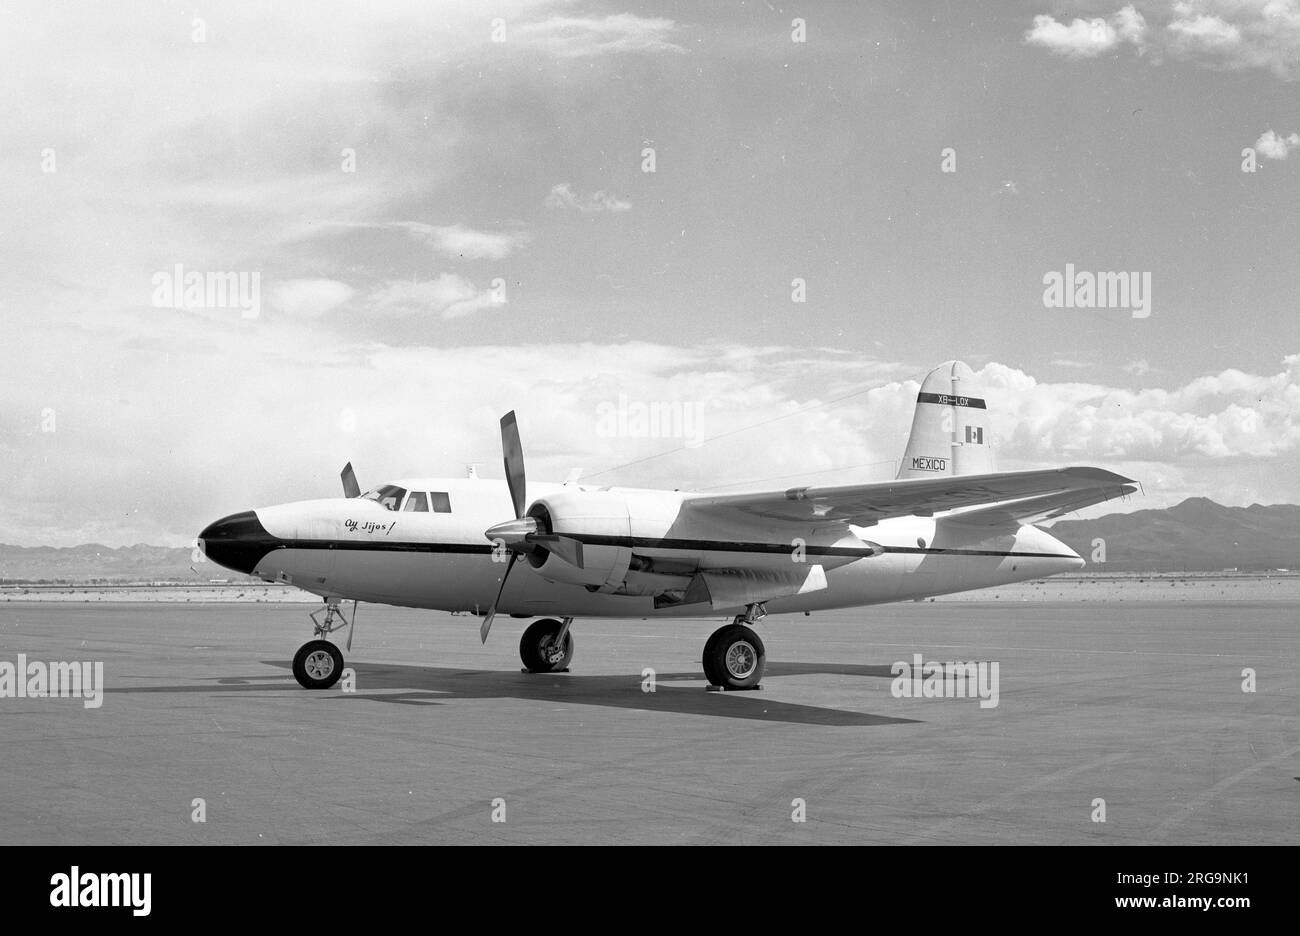 Martin B-26C-T XB-LOX Ay Jijos! Von PEMEX, gebaut als Martin B-26C-20-MO Marauder 41-35071 für die United States Army Air Force, wurde 35071 in AT-23B geändert und später in TB-26C umbenannt. Verkauft an United Air Lines im September 1946 als N5546N. 1948 an die Allied Aircraft Company verkauft und am Bendix Air Race 1949 teilgenommen, aber nicht pünktlich abgeschlossen. 1959 an PEMEX verkauft und in Mexiko als XB-LOX registriert. Kehrte 1965 in die USA zurück und kaufte 1967 von der Confederate Air Force in Harlingen, TX. 1984 wurde der Flugstatus von CAF als N5546N Carolyn wiederhergestellt, stürzte aber am 28. September 1995 ab Stockfoto